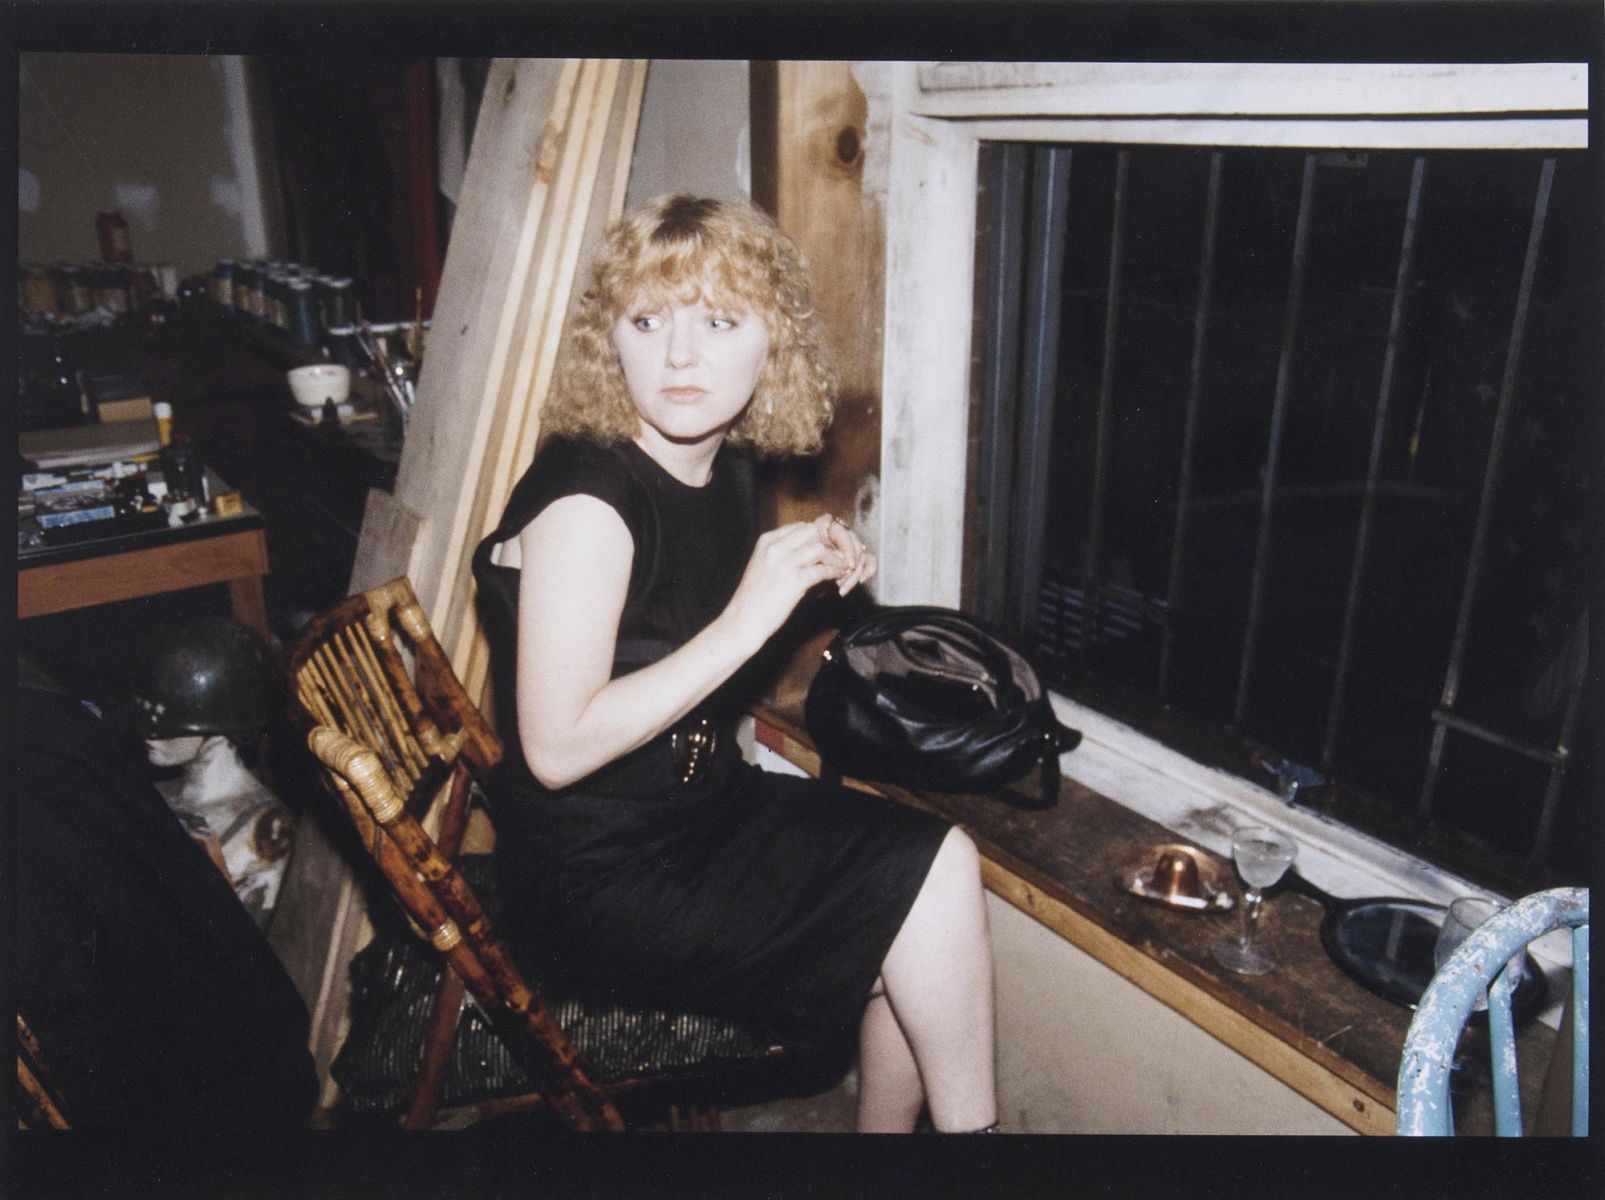 April in the Window, N.Y.C., 1983